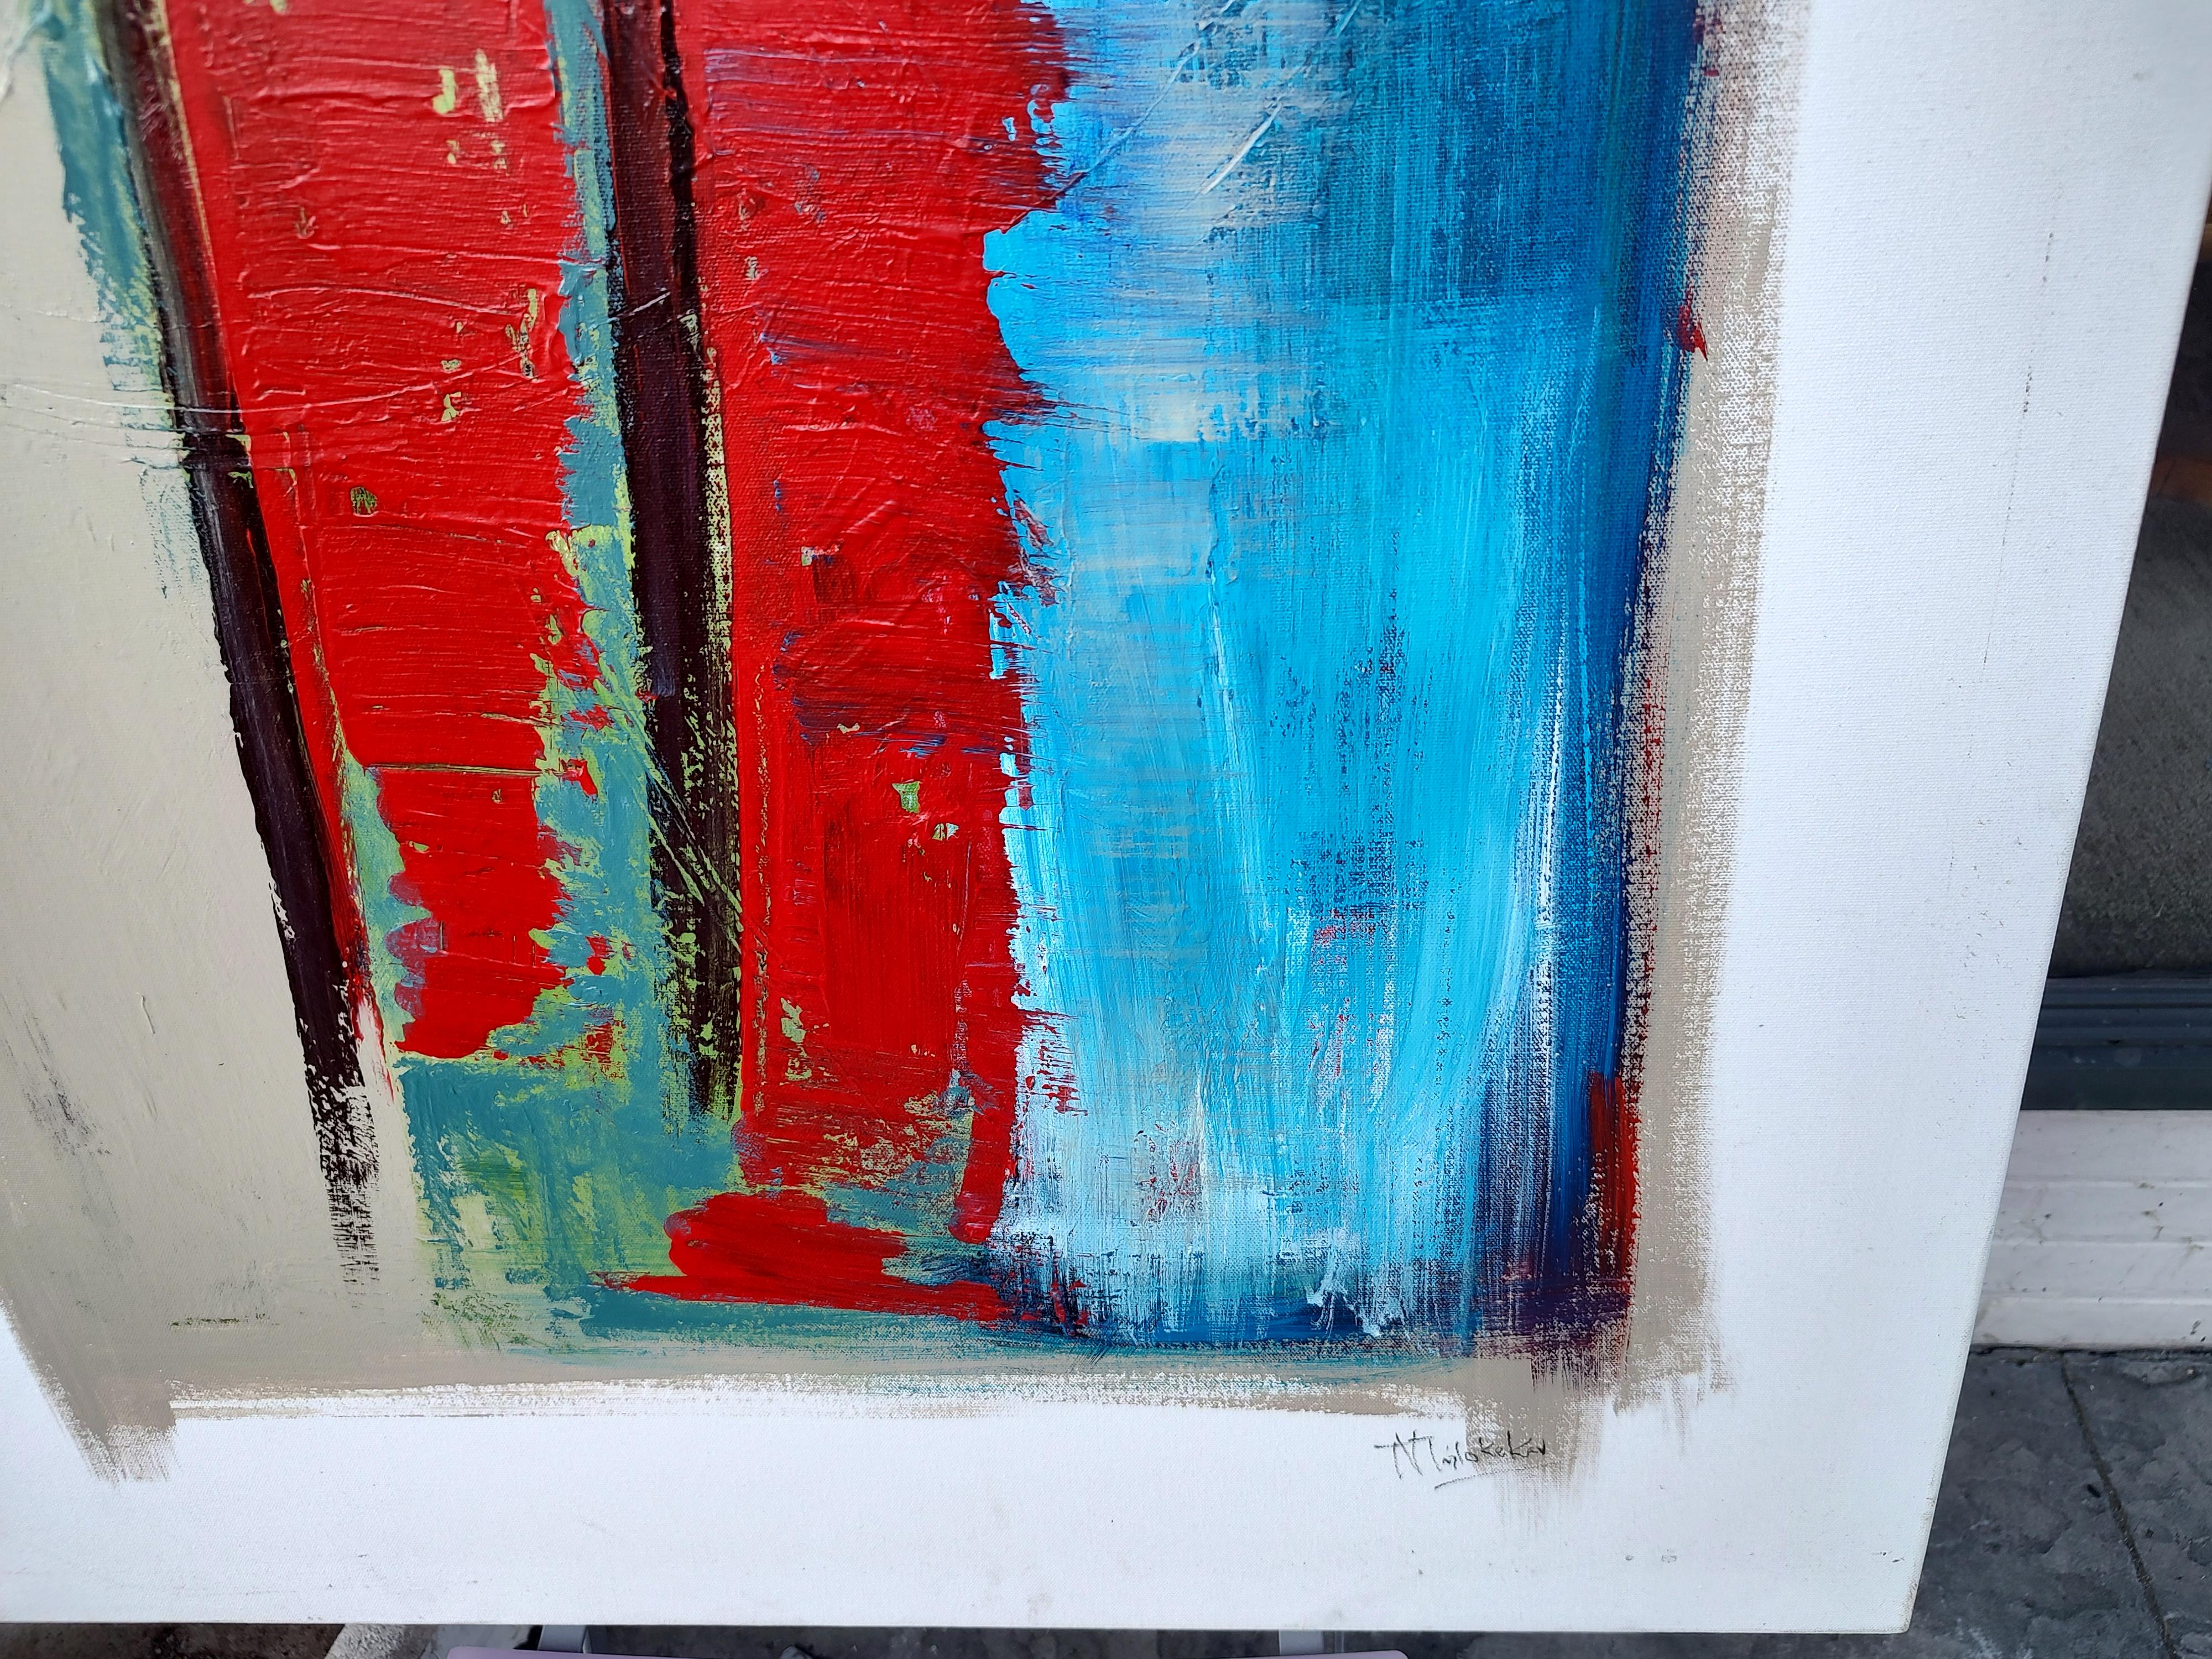 Fabuleuse et colorée huile abstraite sur toile de ce qui me semble être Milo Kekav ou Kovacs. Bien exécuté avec des rouges et des bleus vifs, il peint parfois sur du ruban adhésif pour donner de la texture et de l'effet. Donne une large bordure